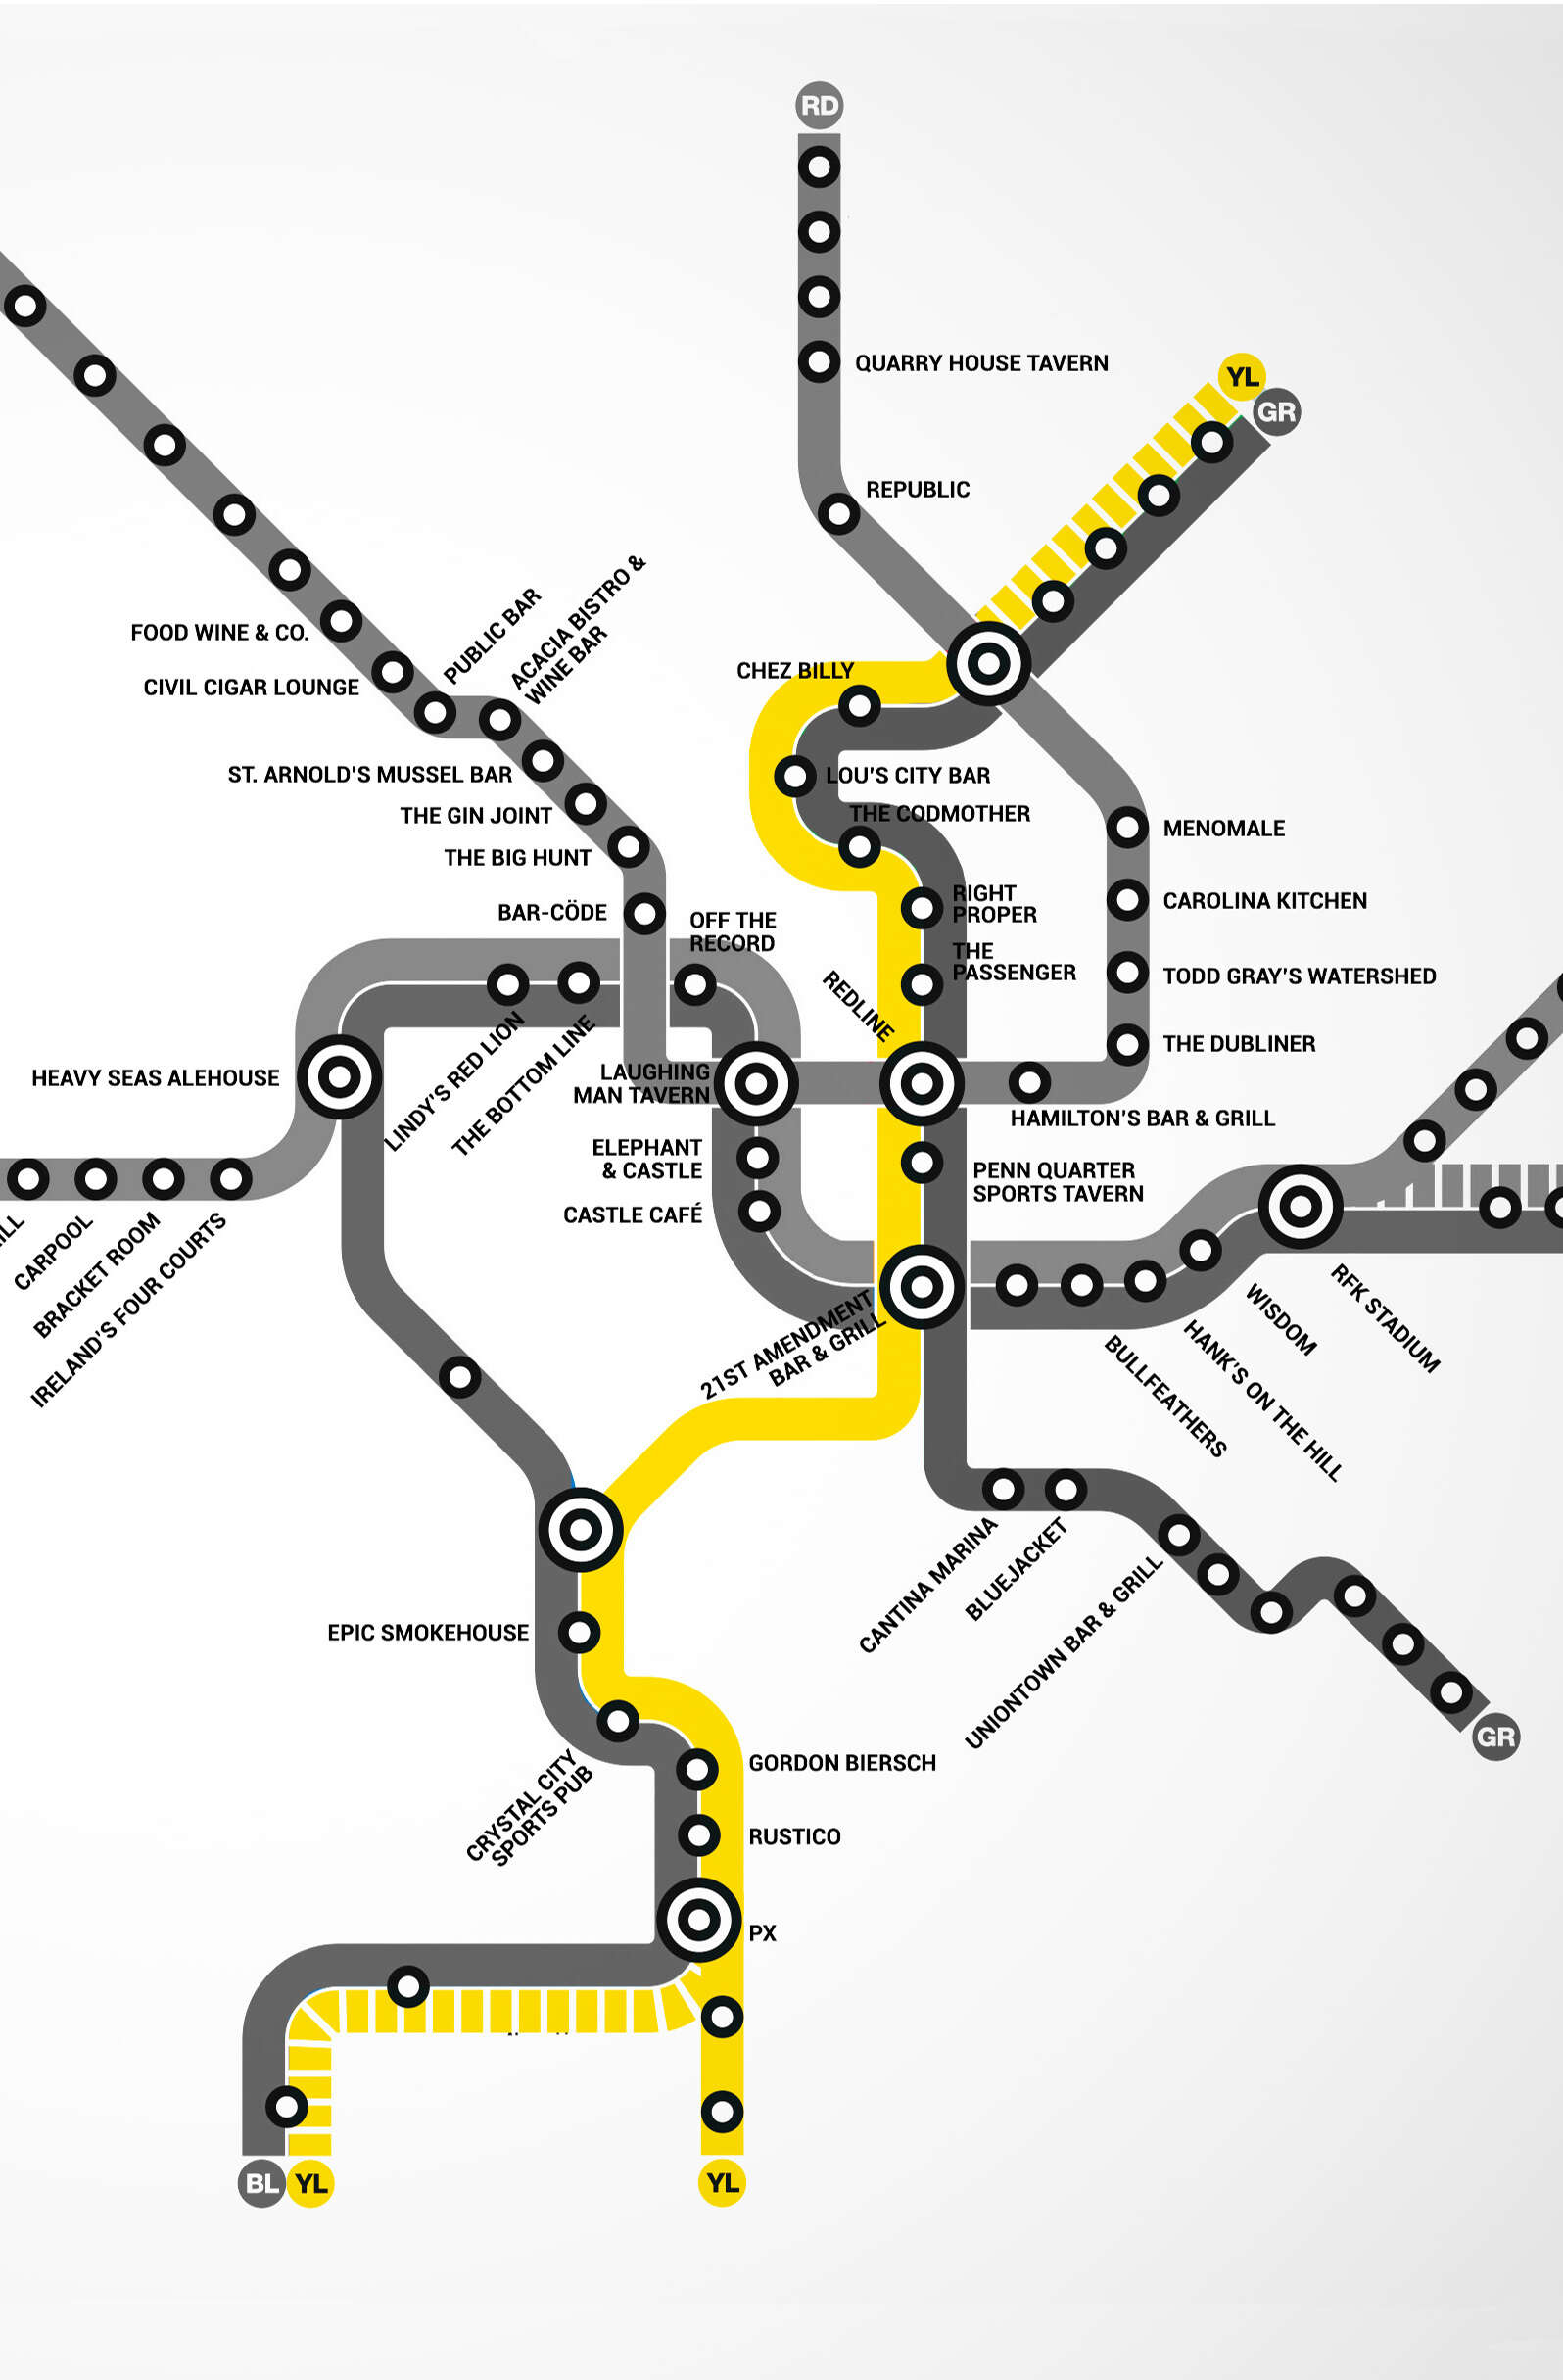 Yellow Line DC Metro bar map